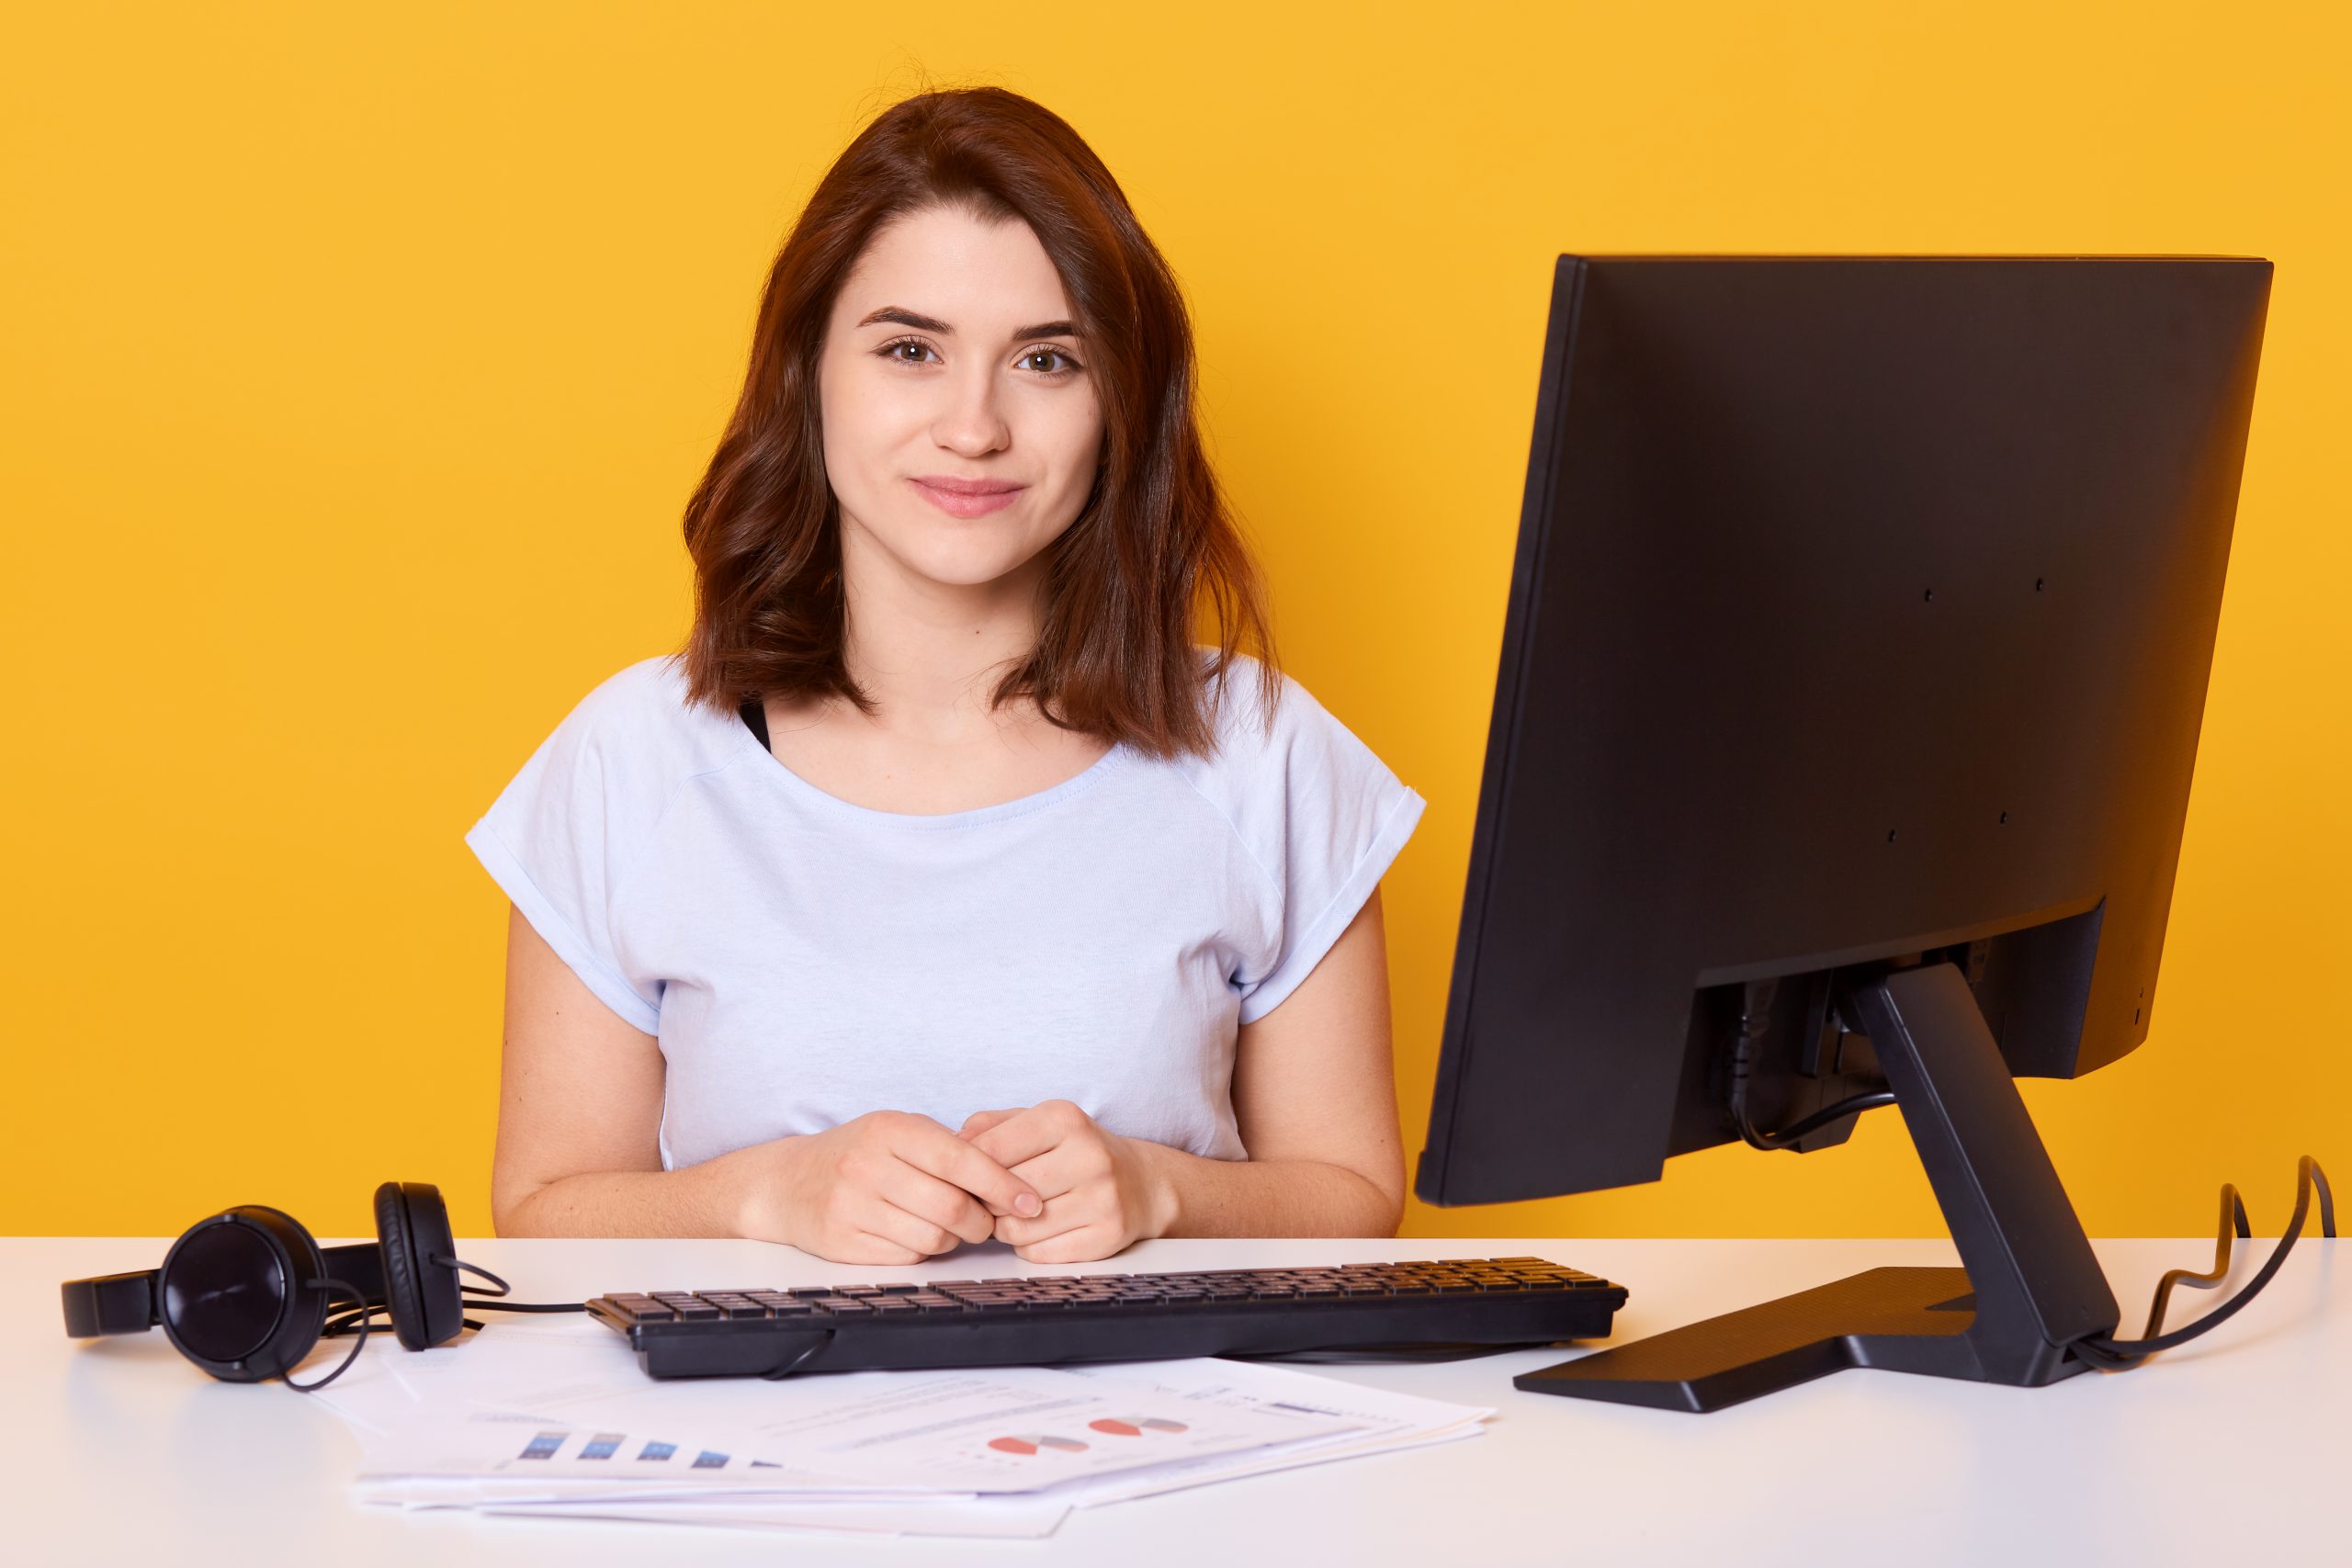 jovem posa sentada em sua mesa de trabalho, diante computador e planilhas impressas espalhadas pela mesa